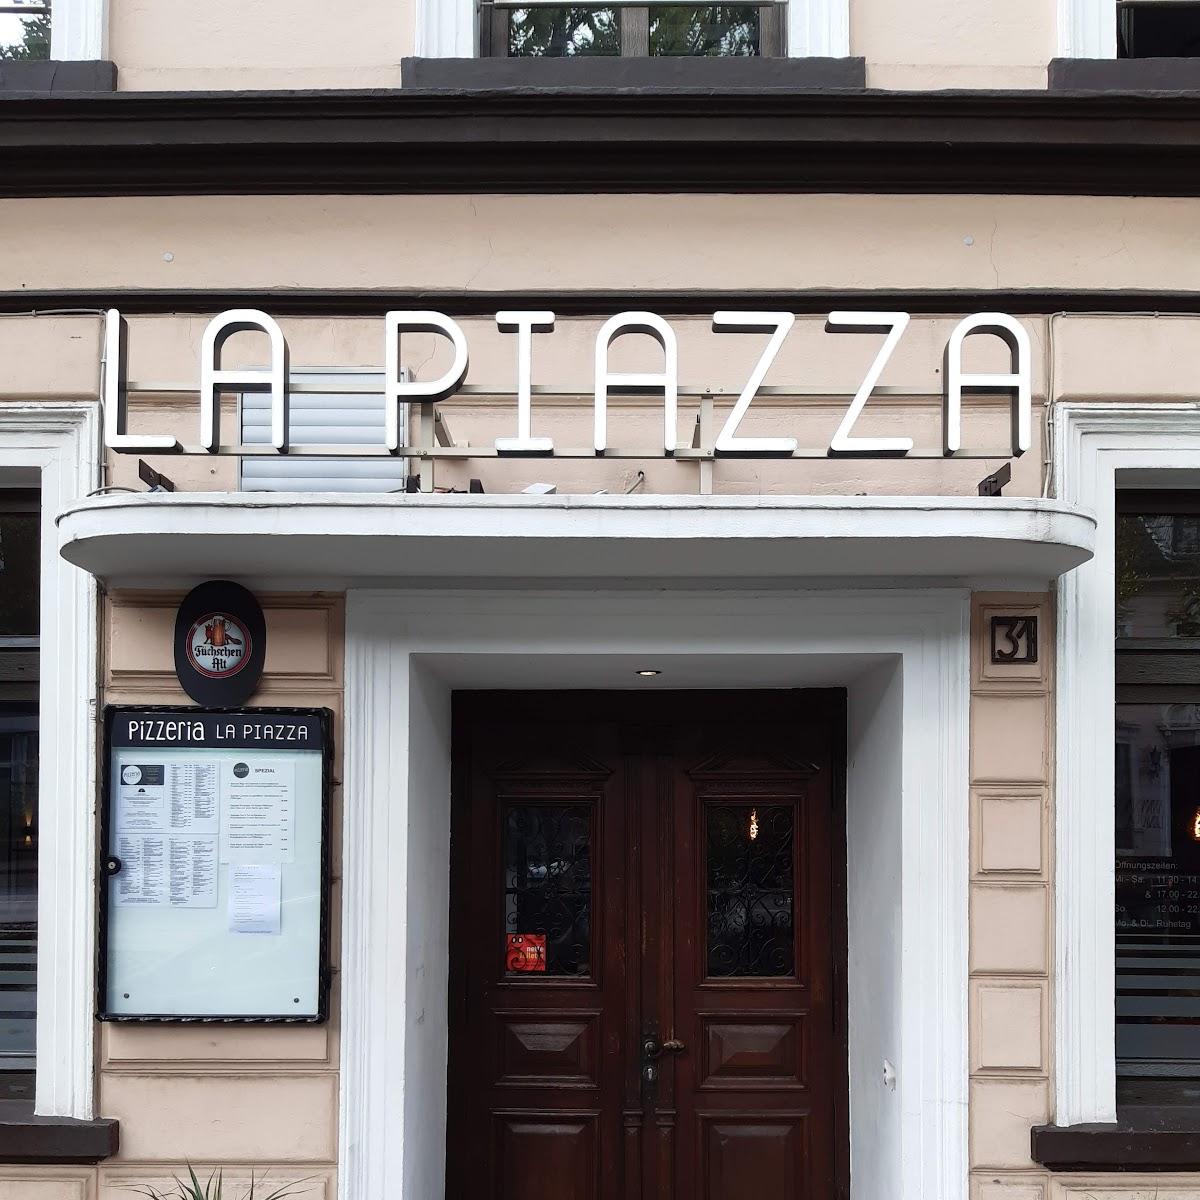 Restaurant "Pizzeria La Piazza" in Haan